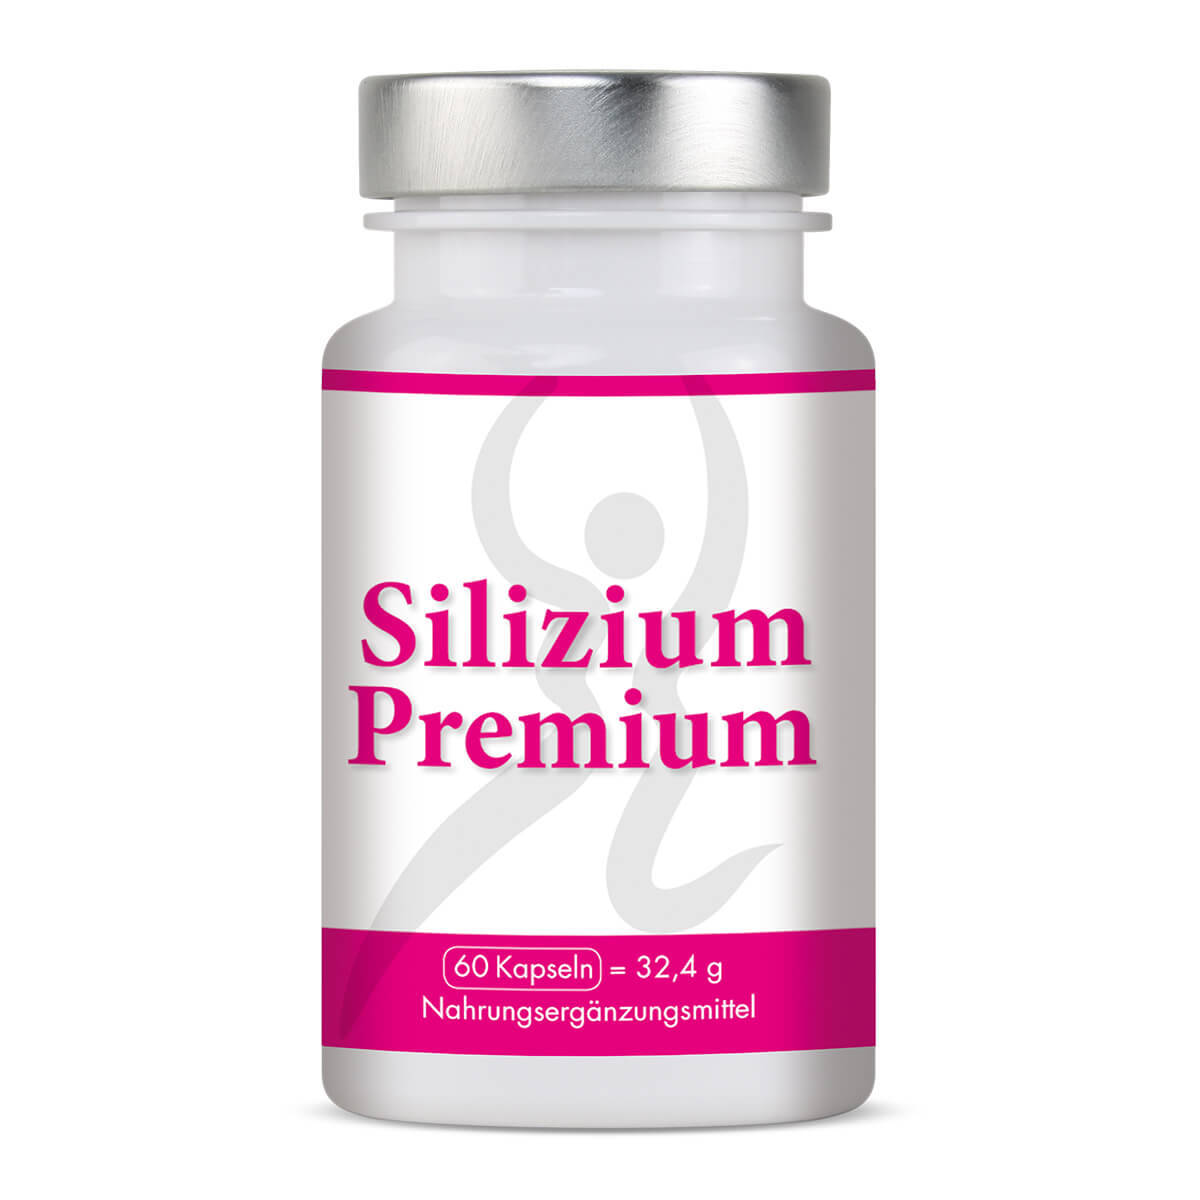 Silizium Premium